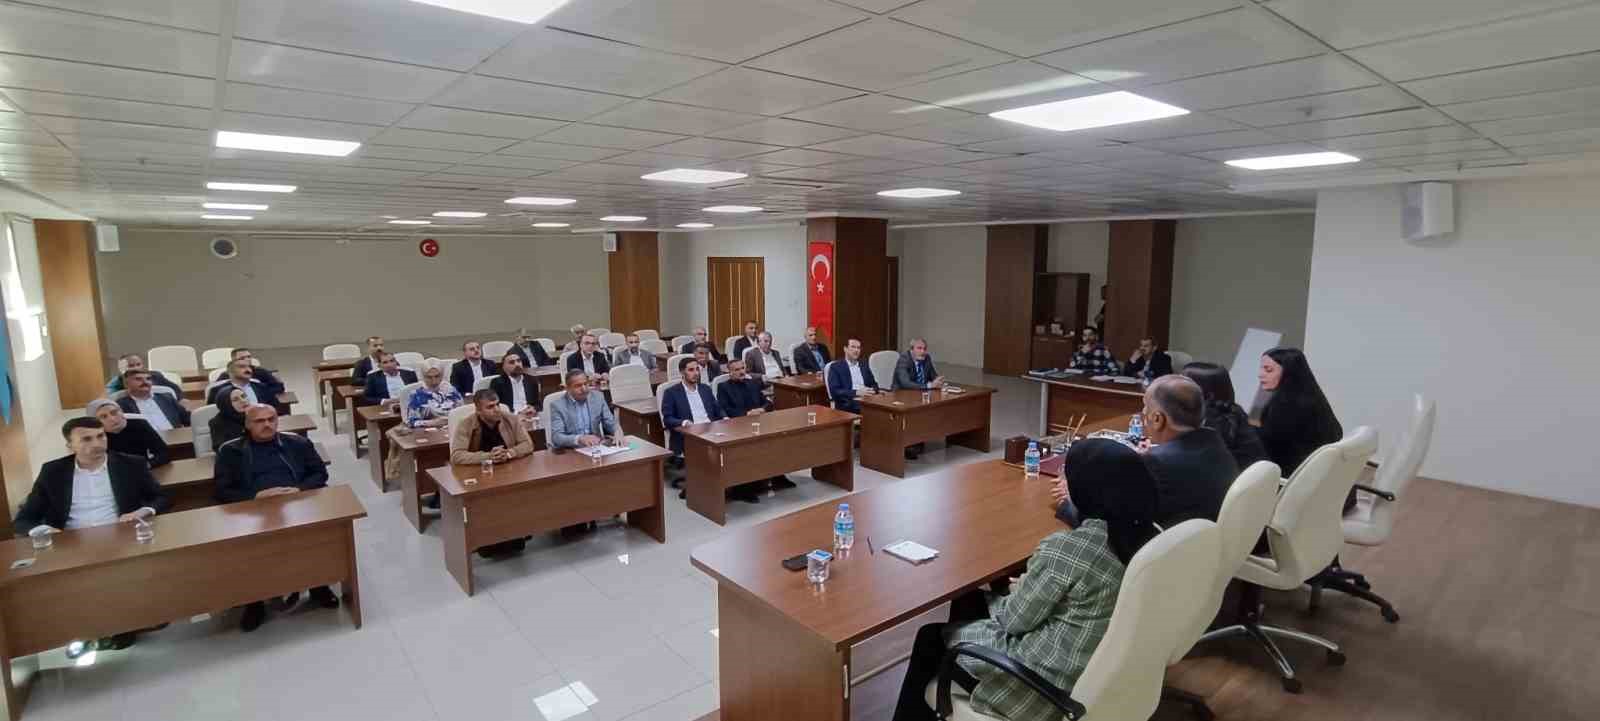 Siirt Belediye Meclisi ilk toplantısını yaptı
